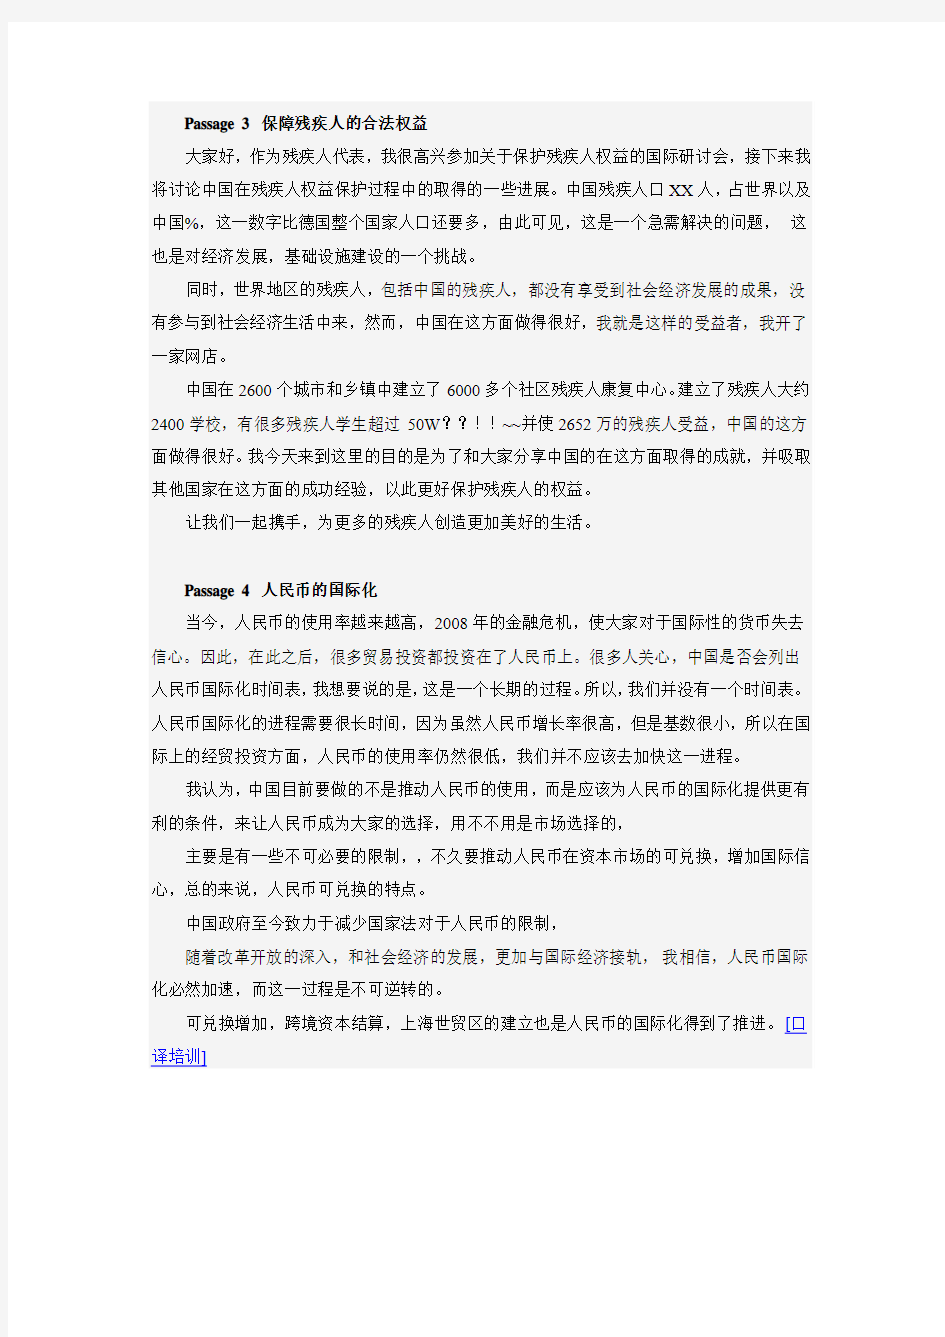 译之灵翻译培训：2015年5月CATTI二级口译真题(回忆版)